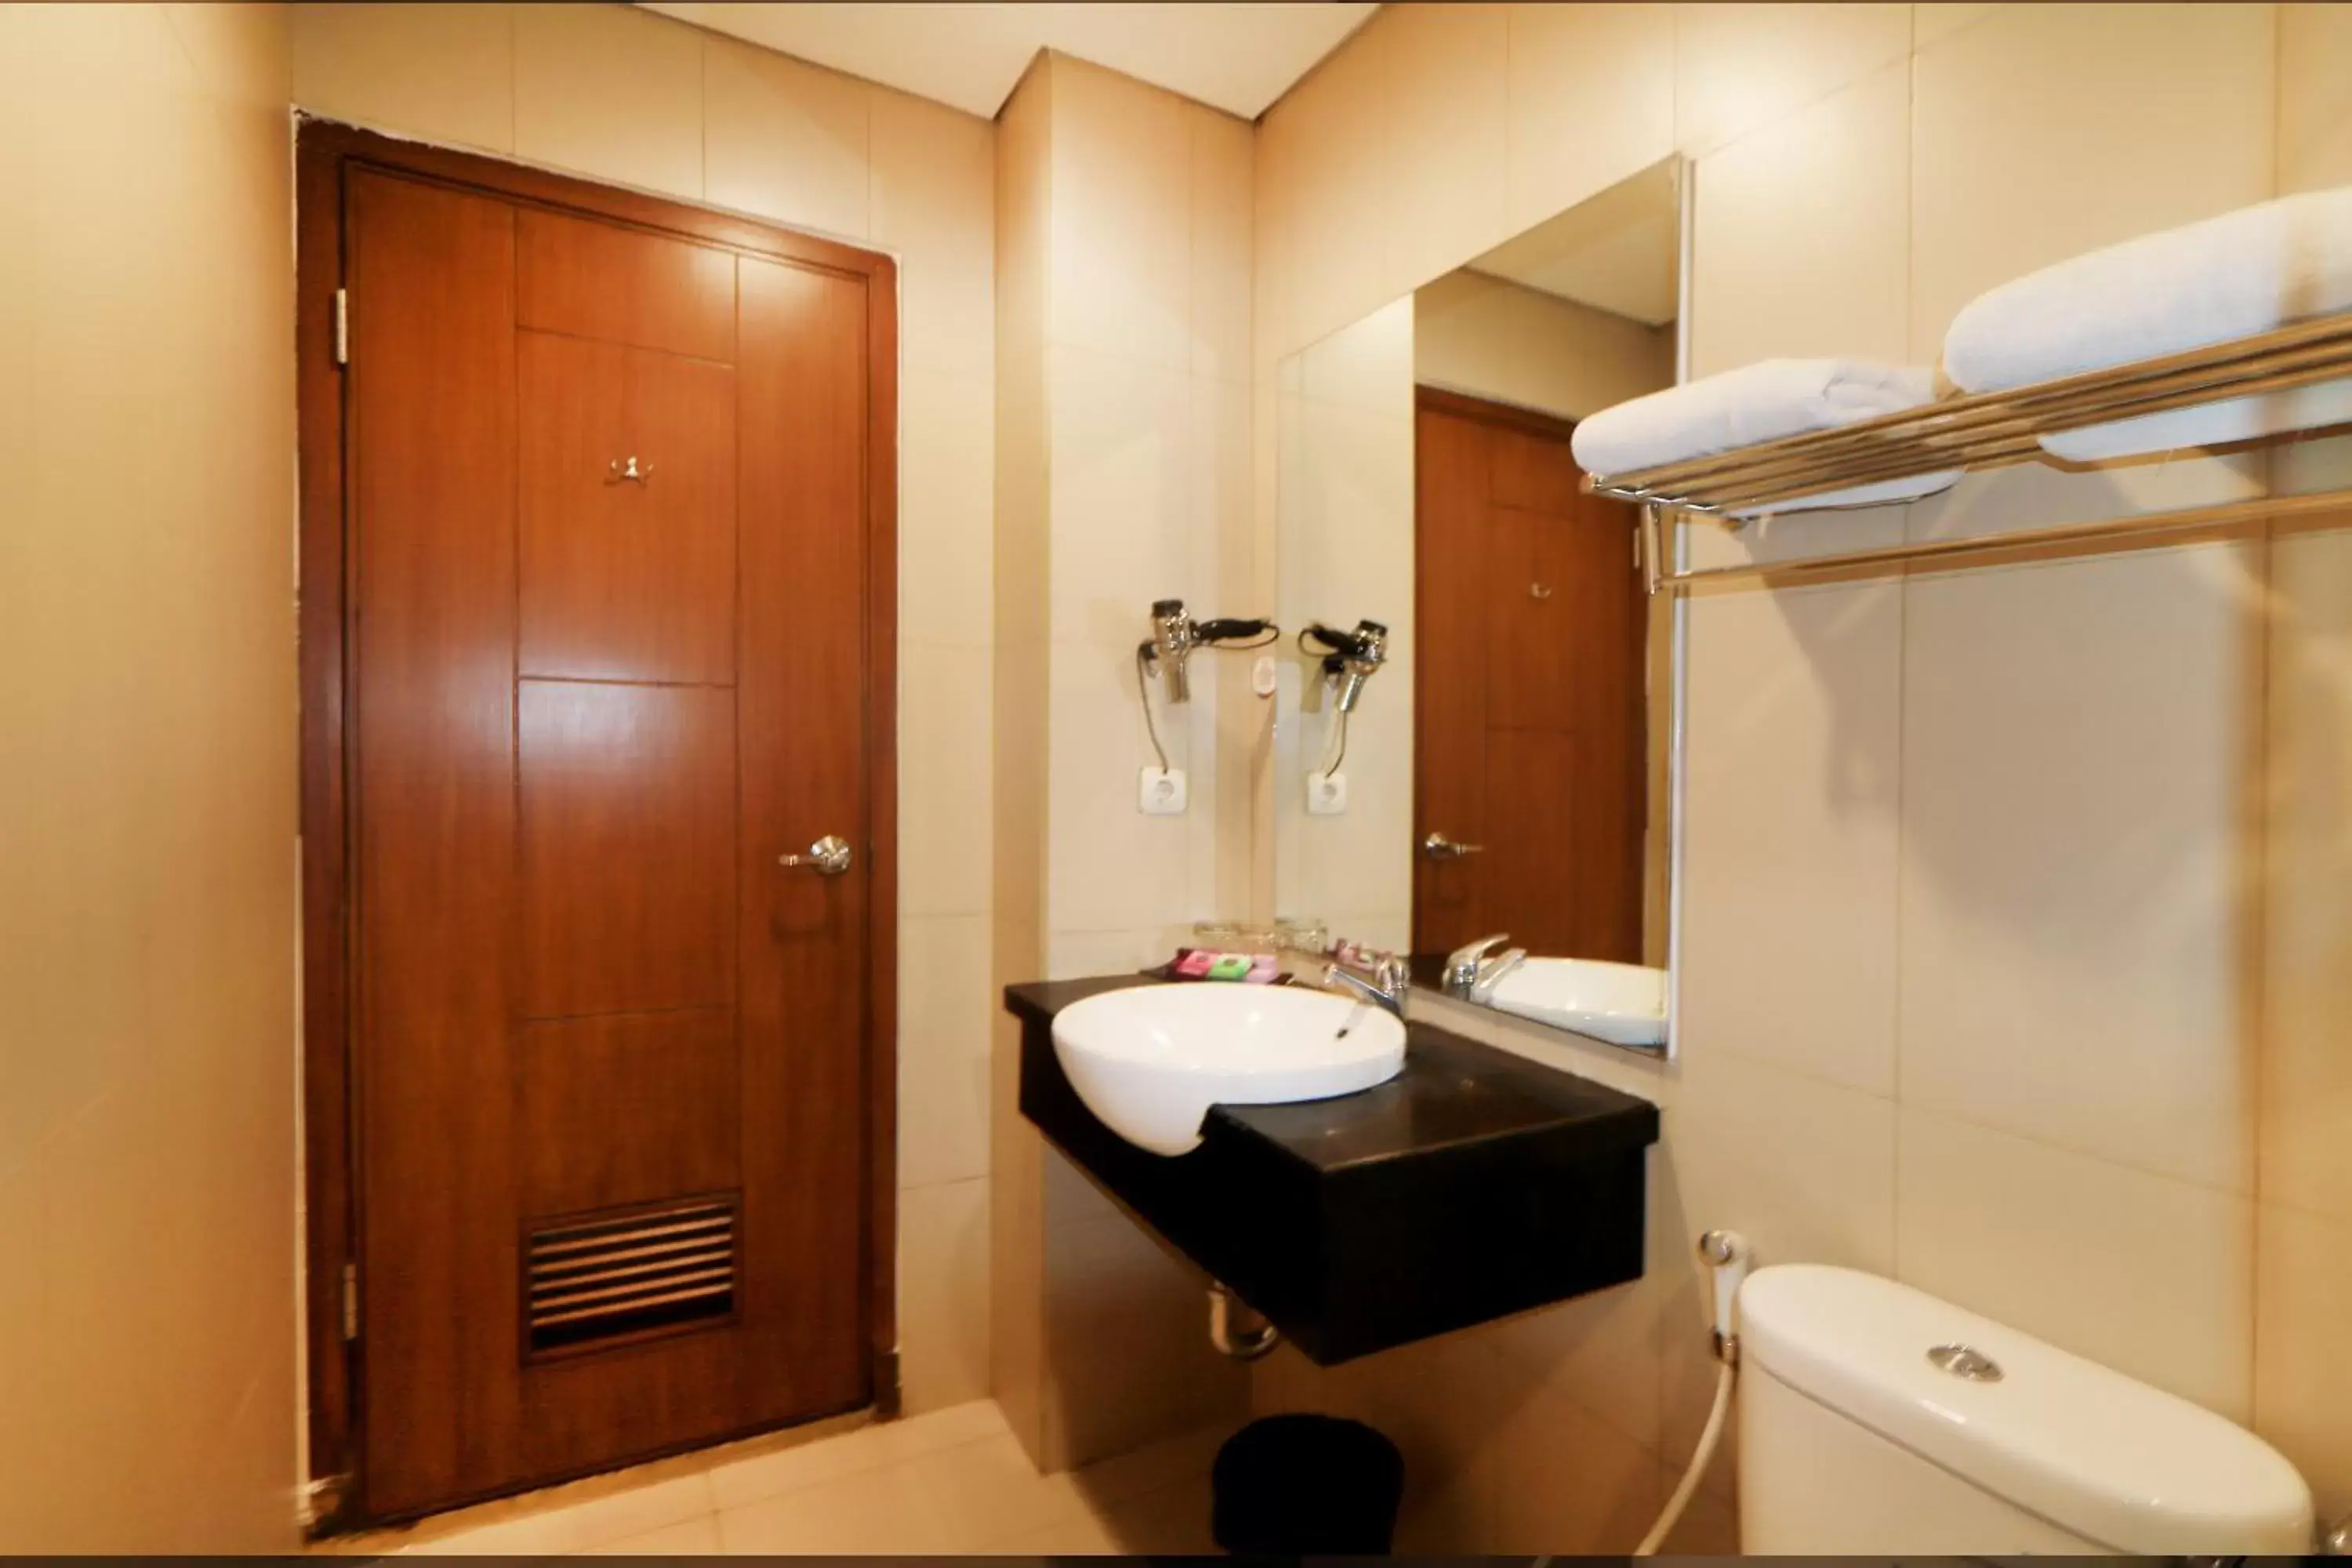 Bathroom in Hotel Dafam Rio